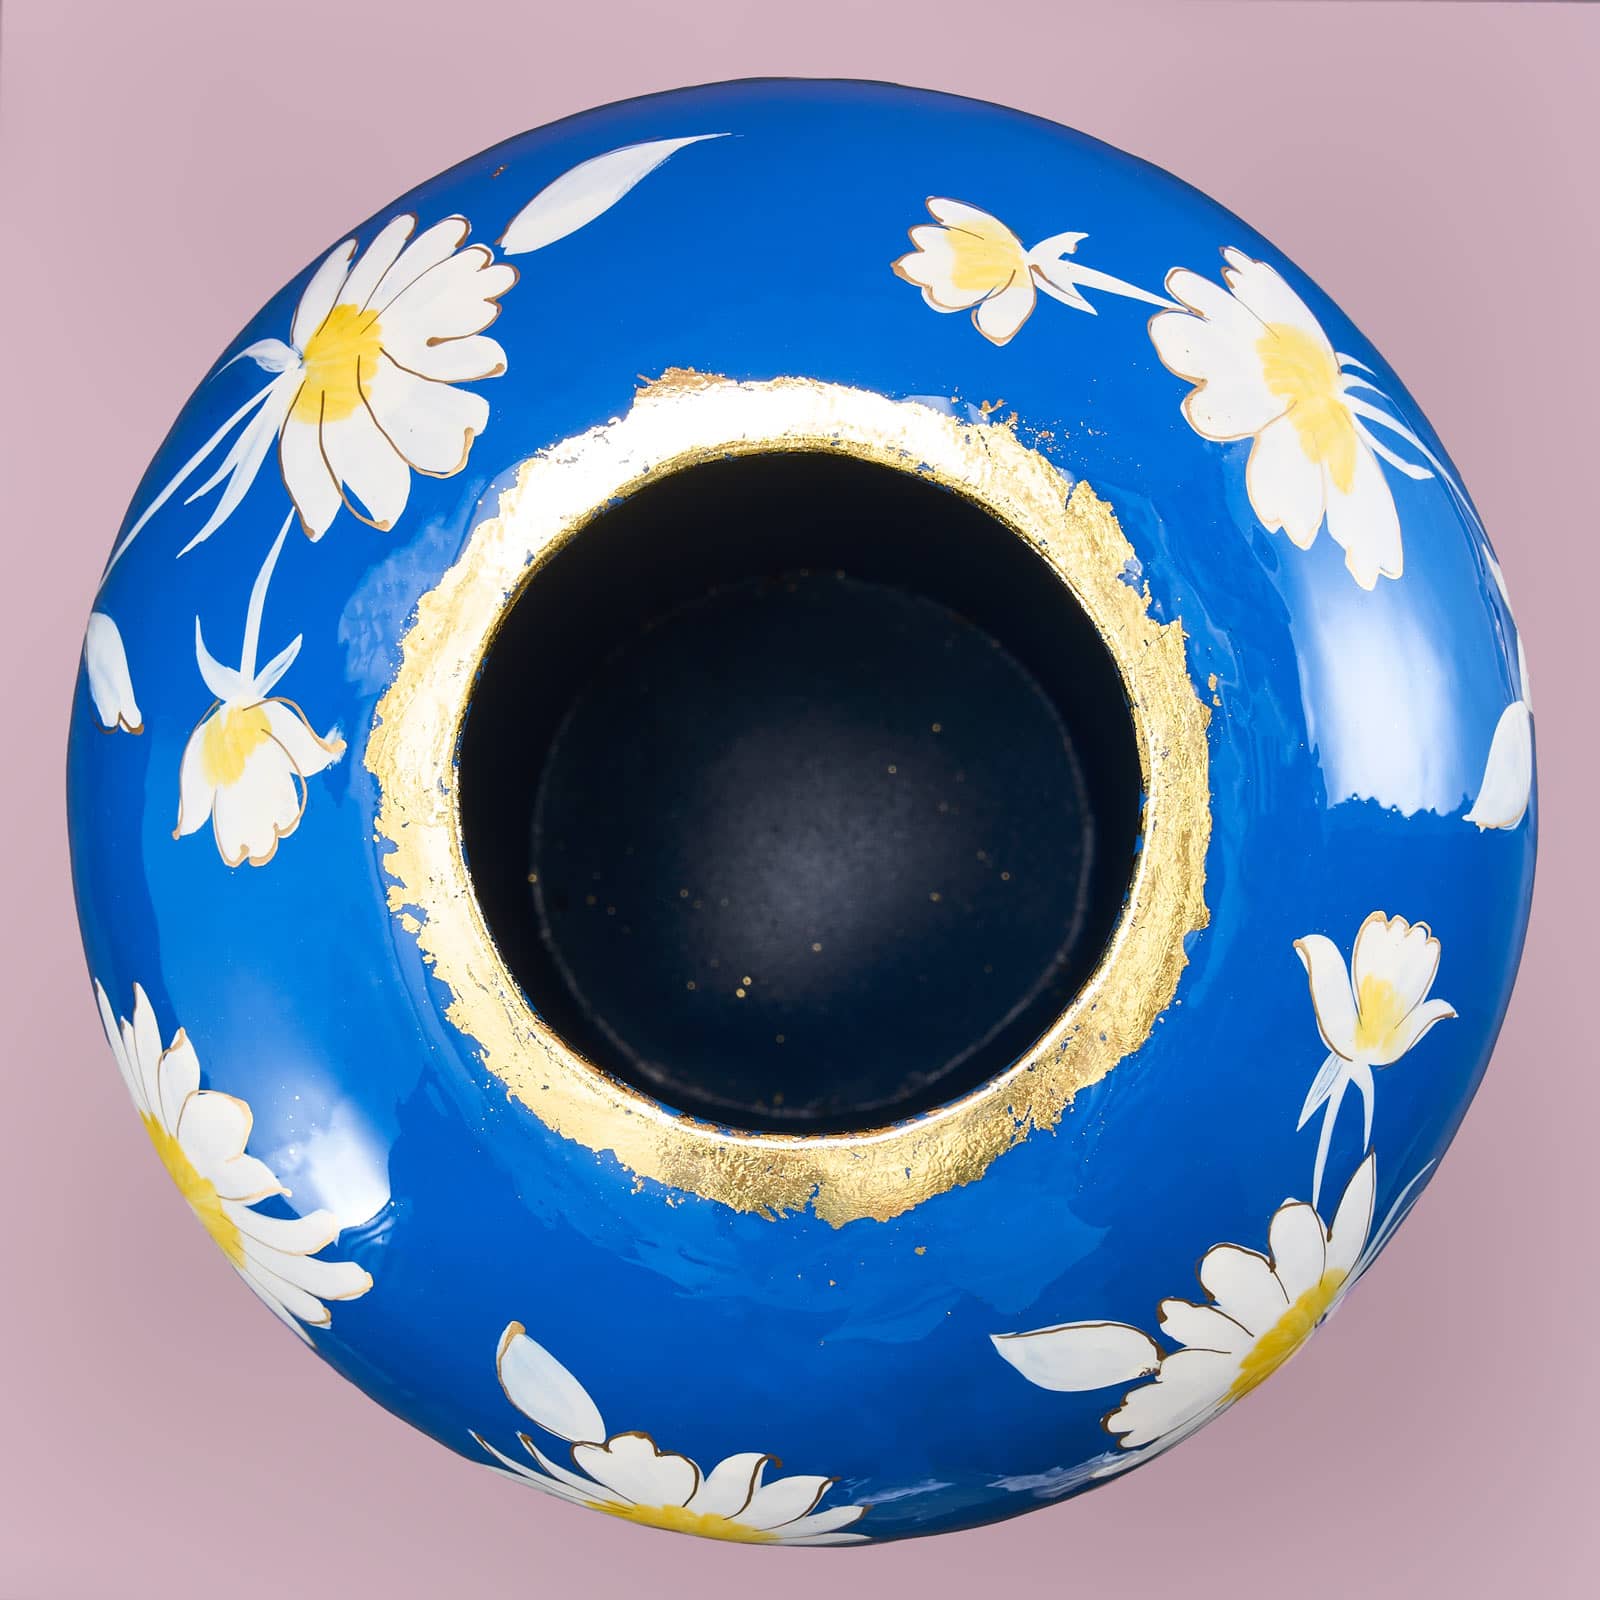 Vase Margarita L, blue